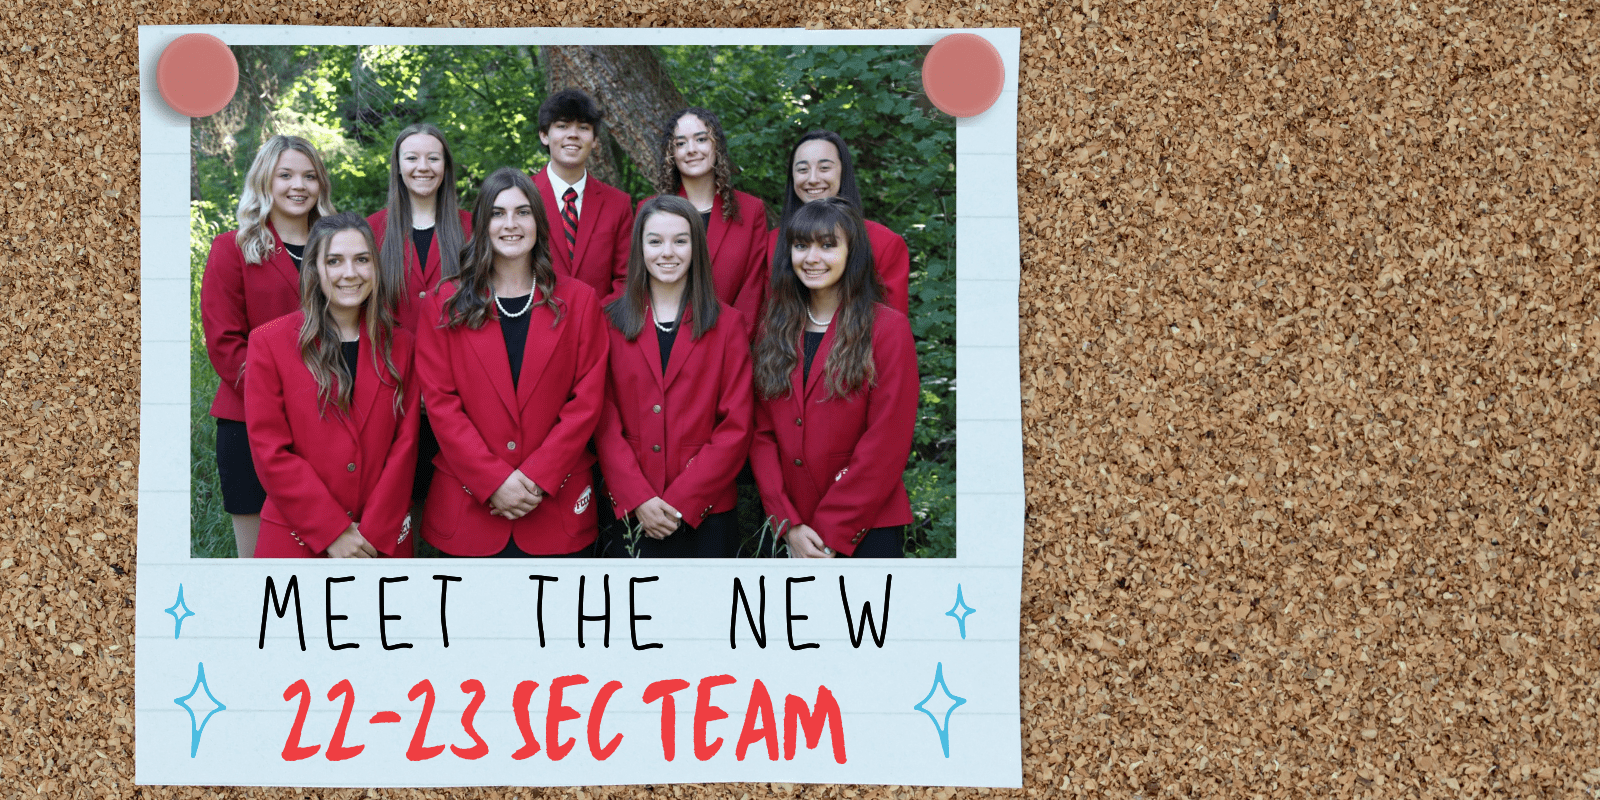 Meet the 22-23 SEC Team!